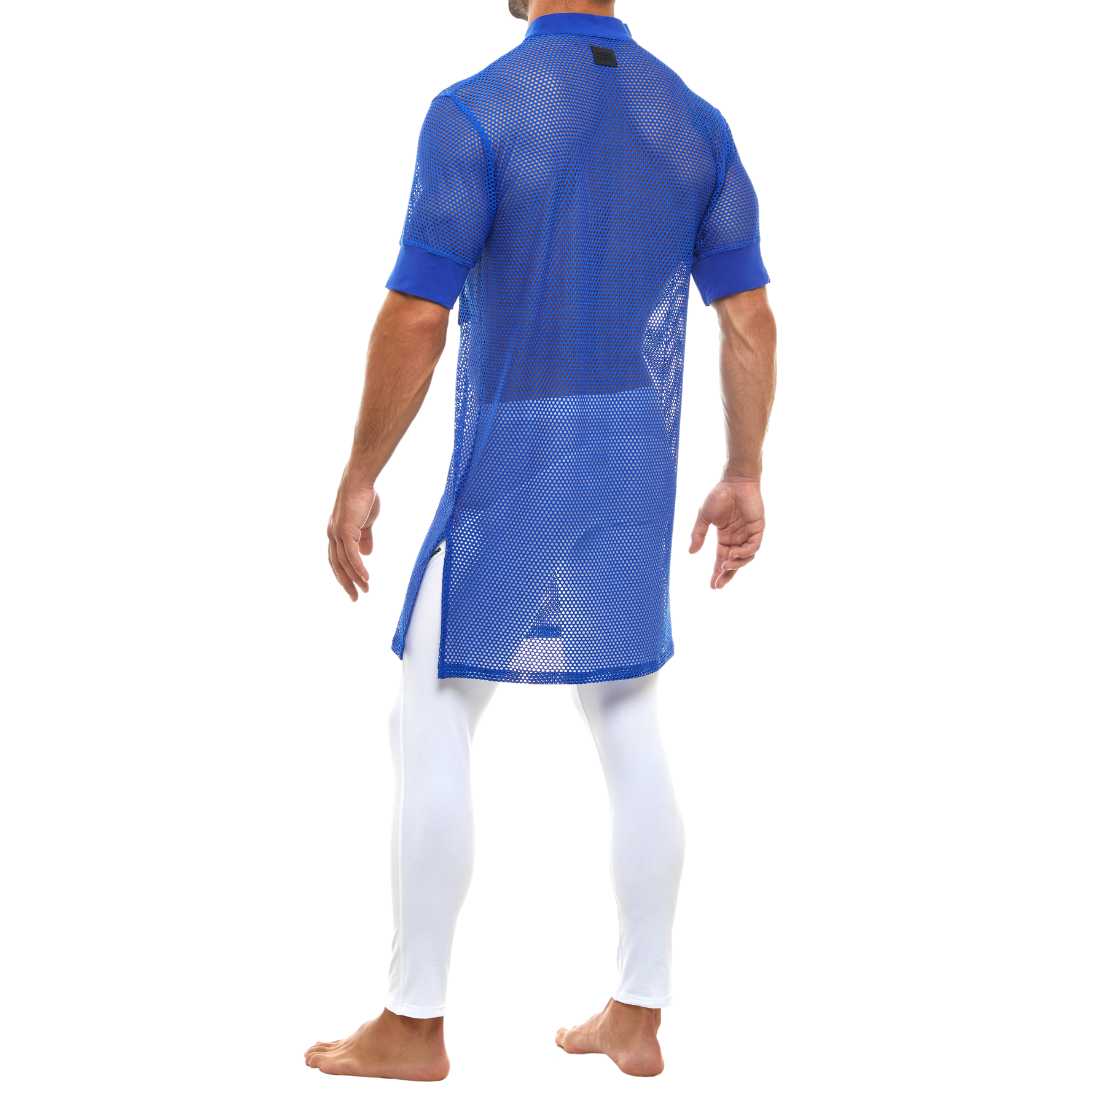 Stijlvol lang blauw mesh t-shirt, ontworpen door het Griekse modemerk Modus Vivendi en te koop bij Flavourez.